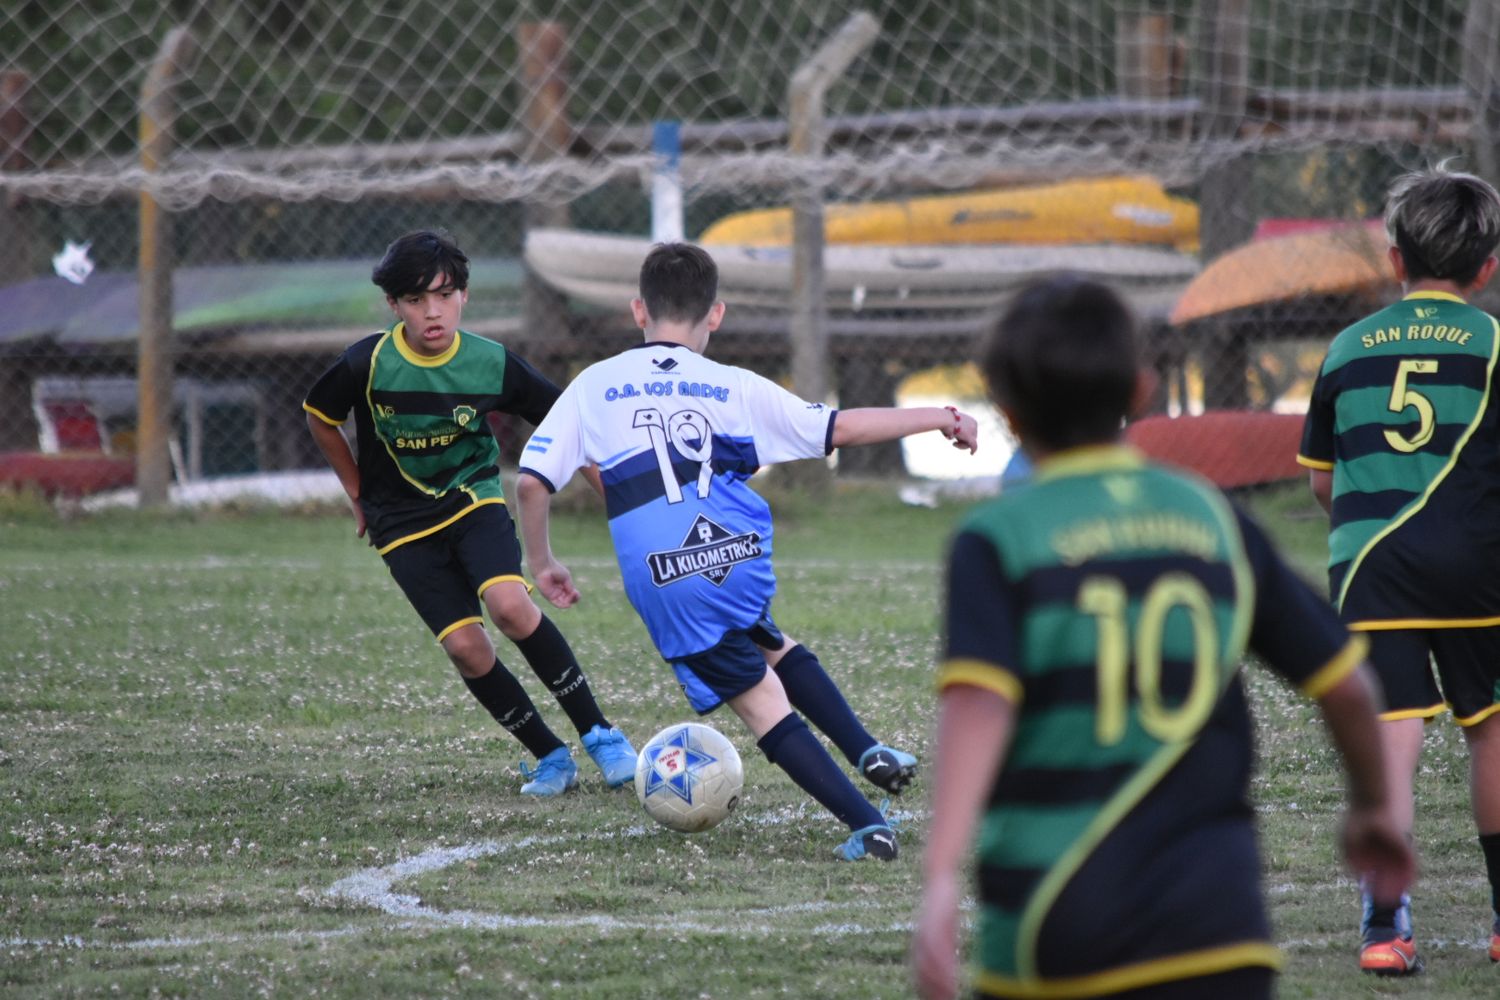 La Liga Infantil sorteó las zonas del Clausura “Pinocho” Velo: las niñas jugarán oficialmente